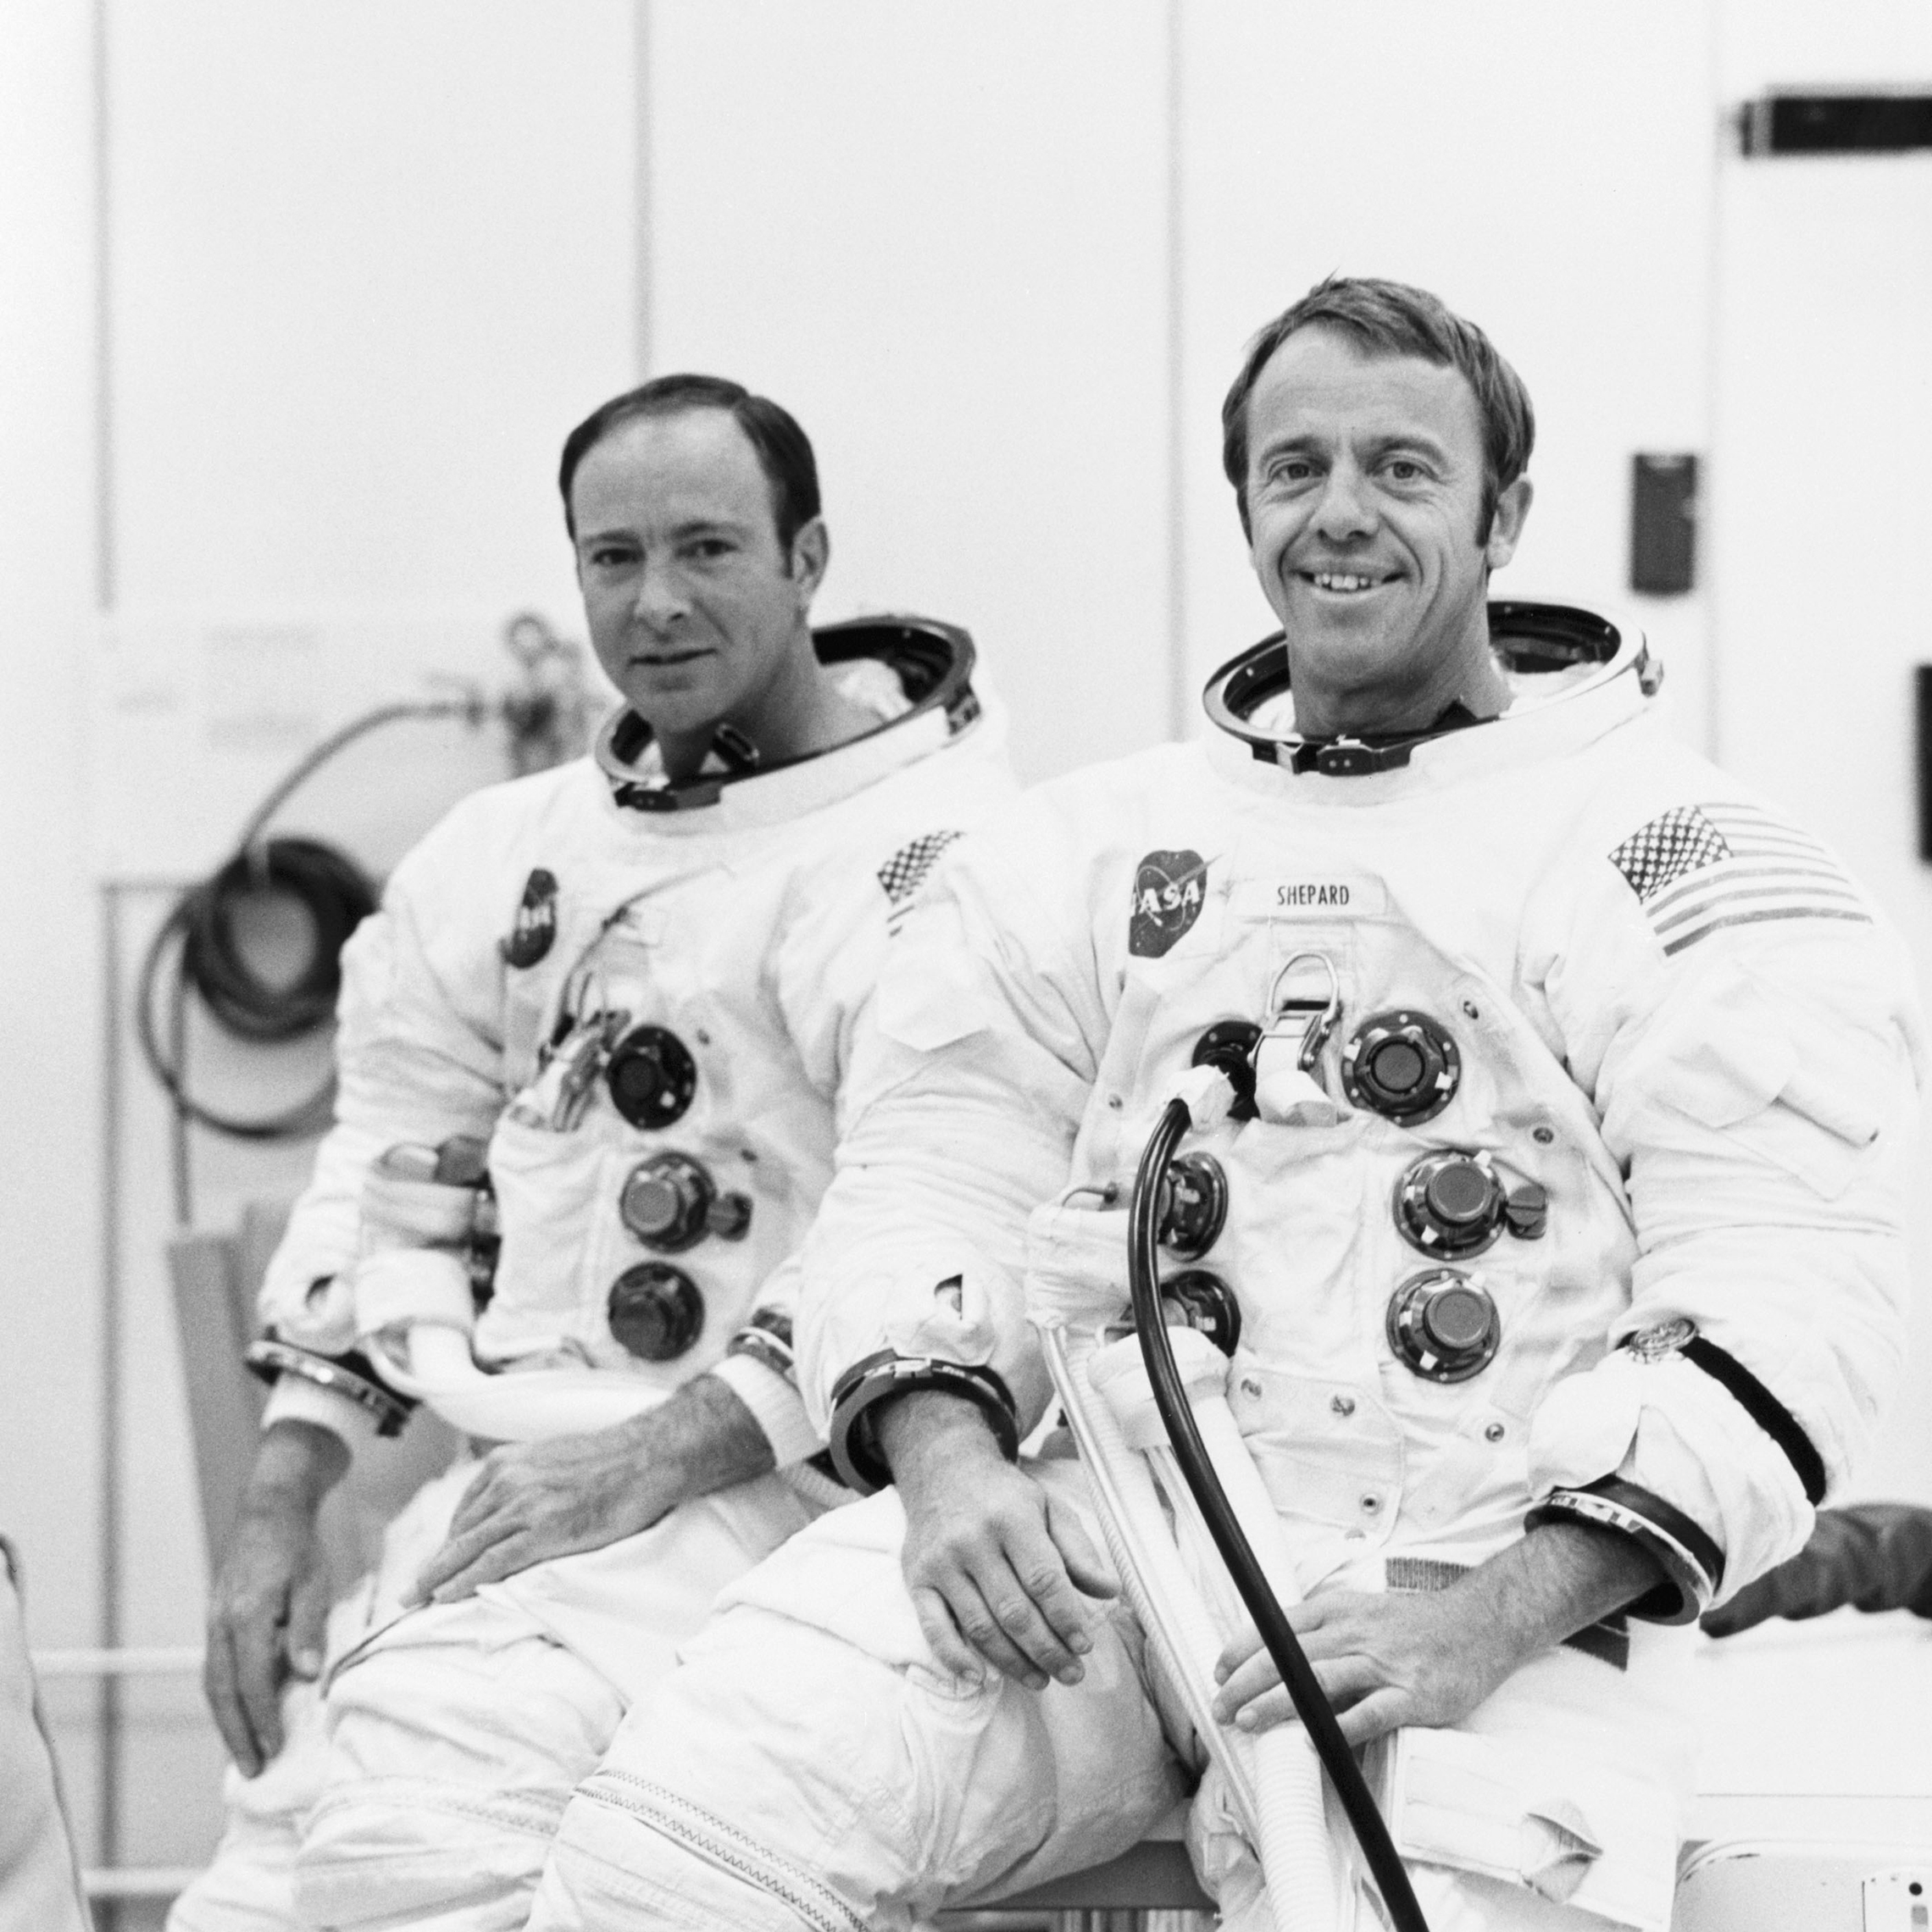 září 18, 1970: Astronauti Alan B. Shepard, Jr. (vpravo), velitel, a Edgar D. Mitchell, pilot lunárního modulu, jsou vhodné pro pilotovaný nadmořská výška horizontu v Apollo 14 lunárního modulu (LM). Pro ověření komunikačních a naváděcích a navigačních systémů LM byl proveden běh s posádkou ve vakuové komoře budovy s posádkou. (NASA)'s communications and guidance and navigation systems. (NASA)